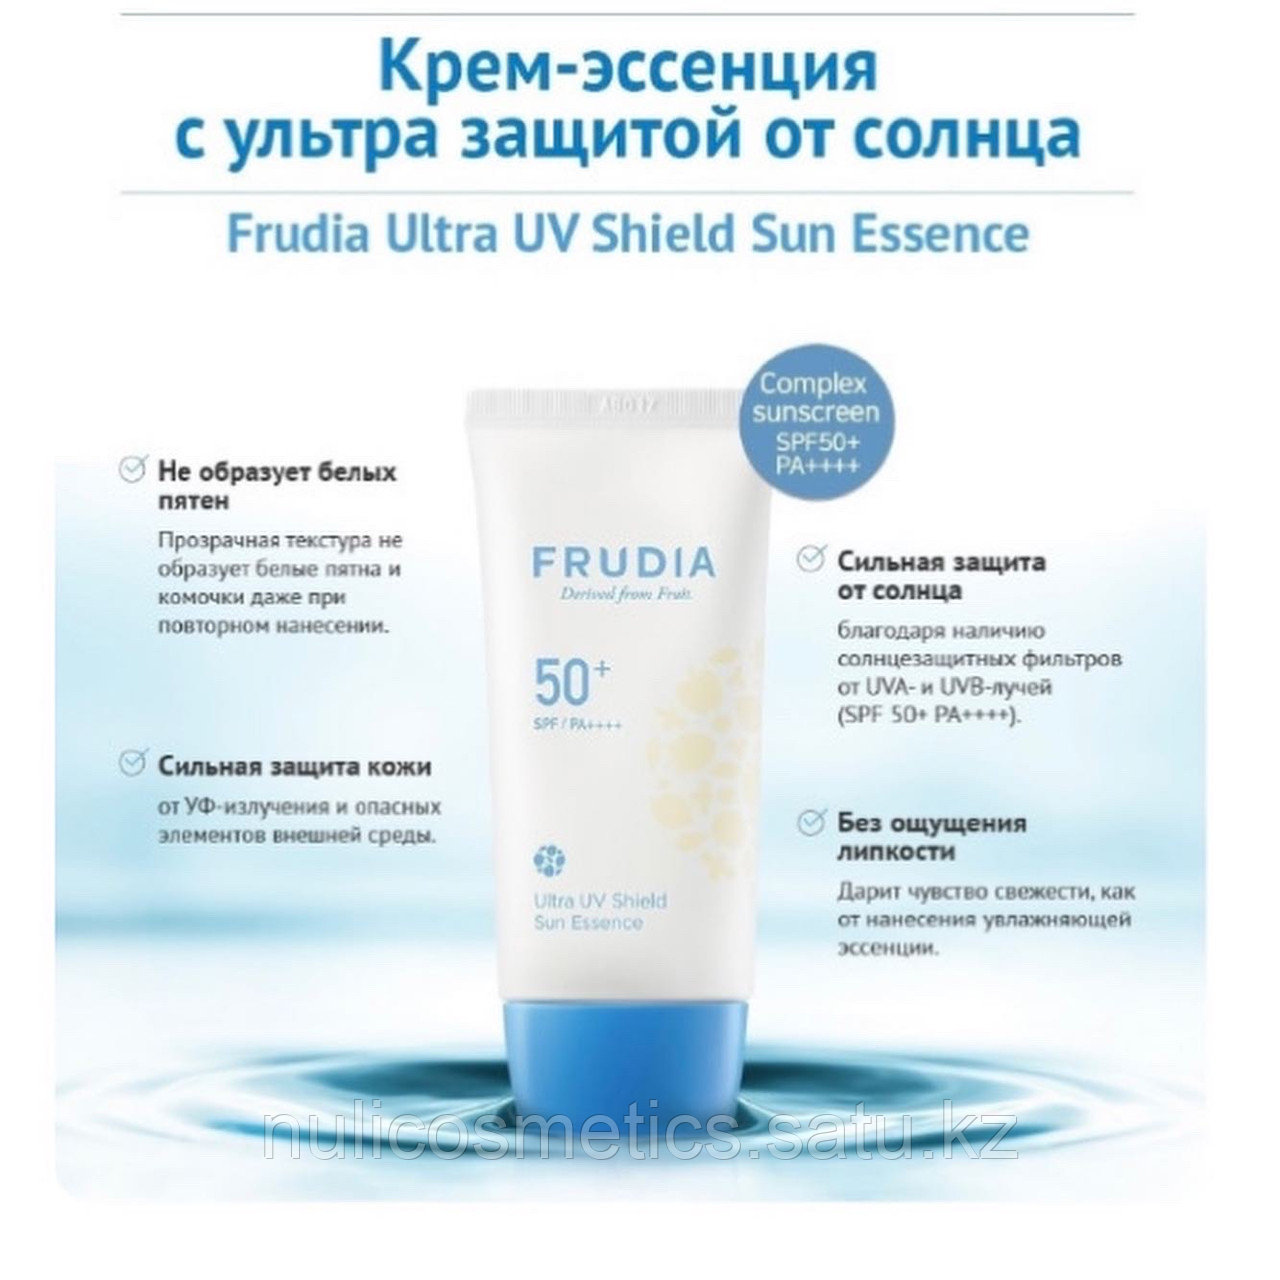 Frudia ultra uv shield sun. Frudia крем с ультра защитой SPF 50. Frudia солнцезащитный крем-эссенция. Frudia Ultra UV Shield Sun Essence spf50+/pa++++. Фрудиа солнцезащитный крем СПФ 50.